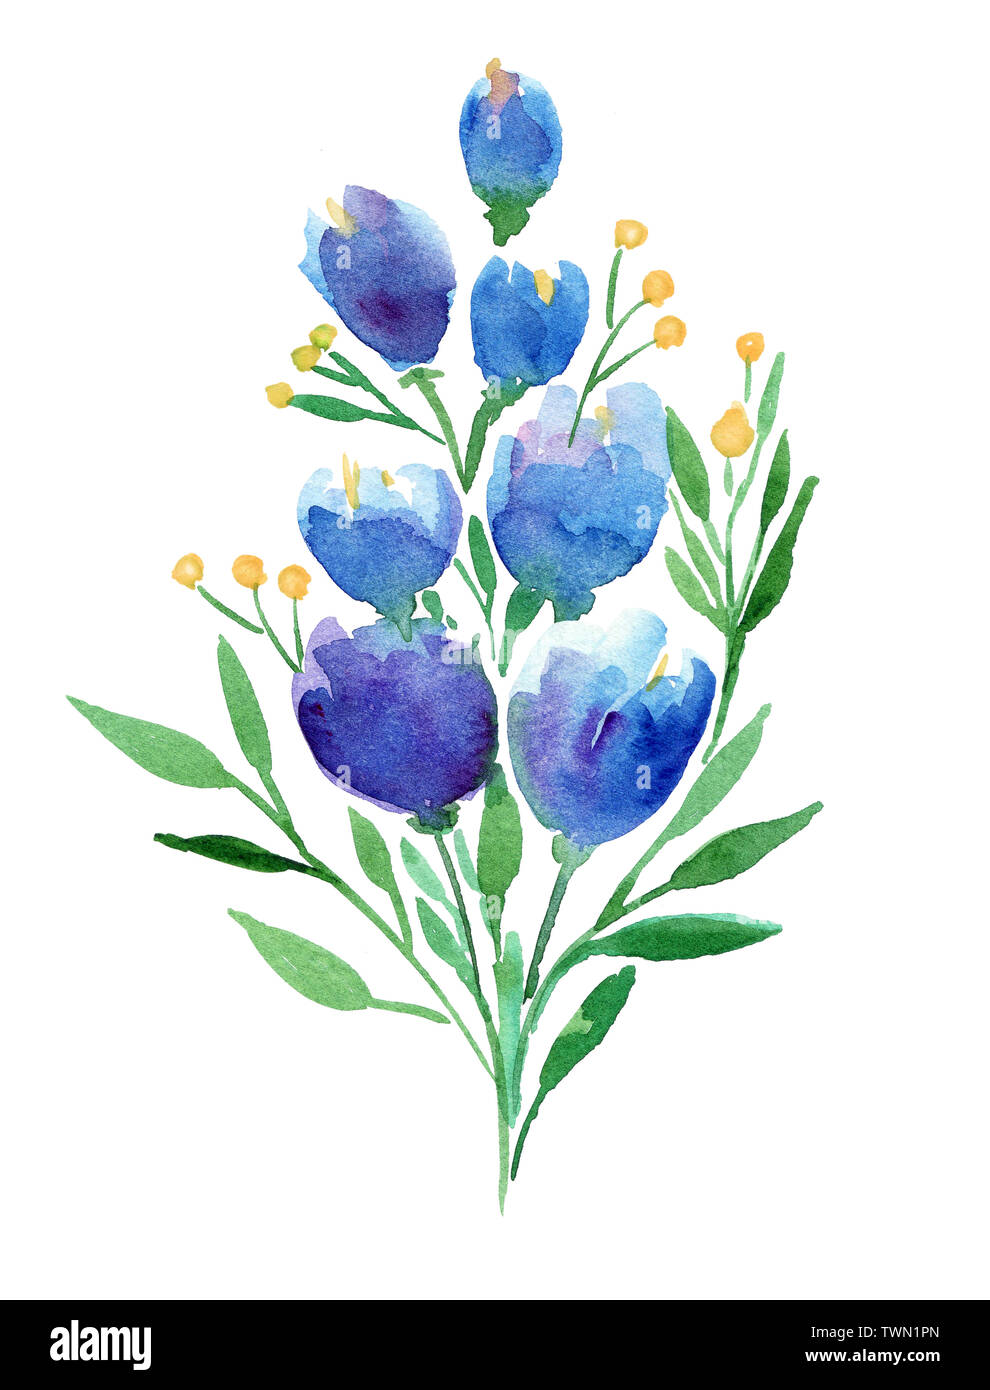 Disegno A Mano Boho Acquerello Illustrazione Floreale Con Fiori Di Colore Blu Rami Foglie Foto Stock Alamy